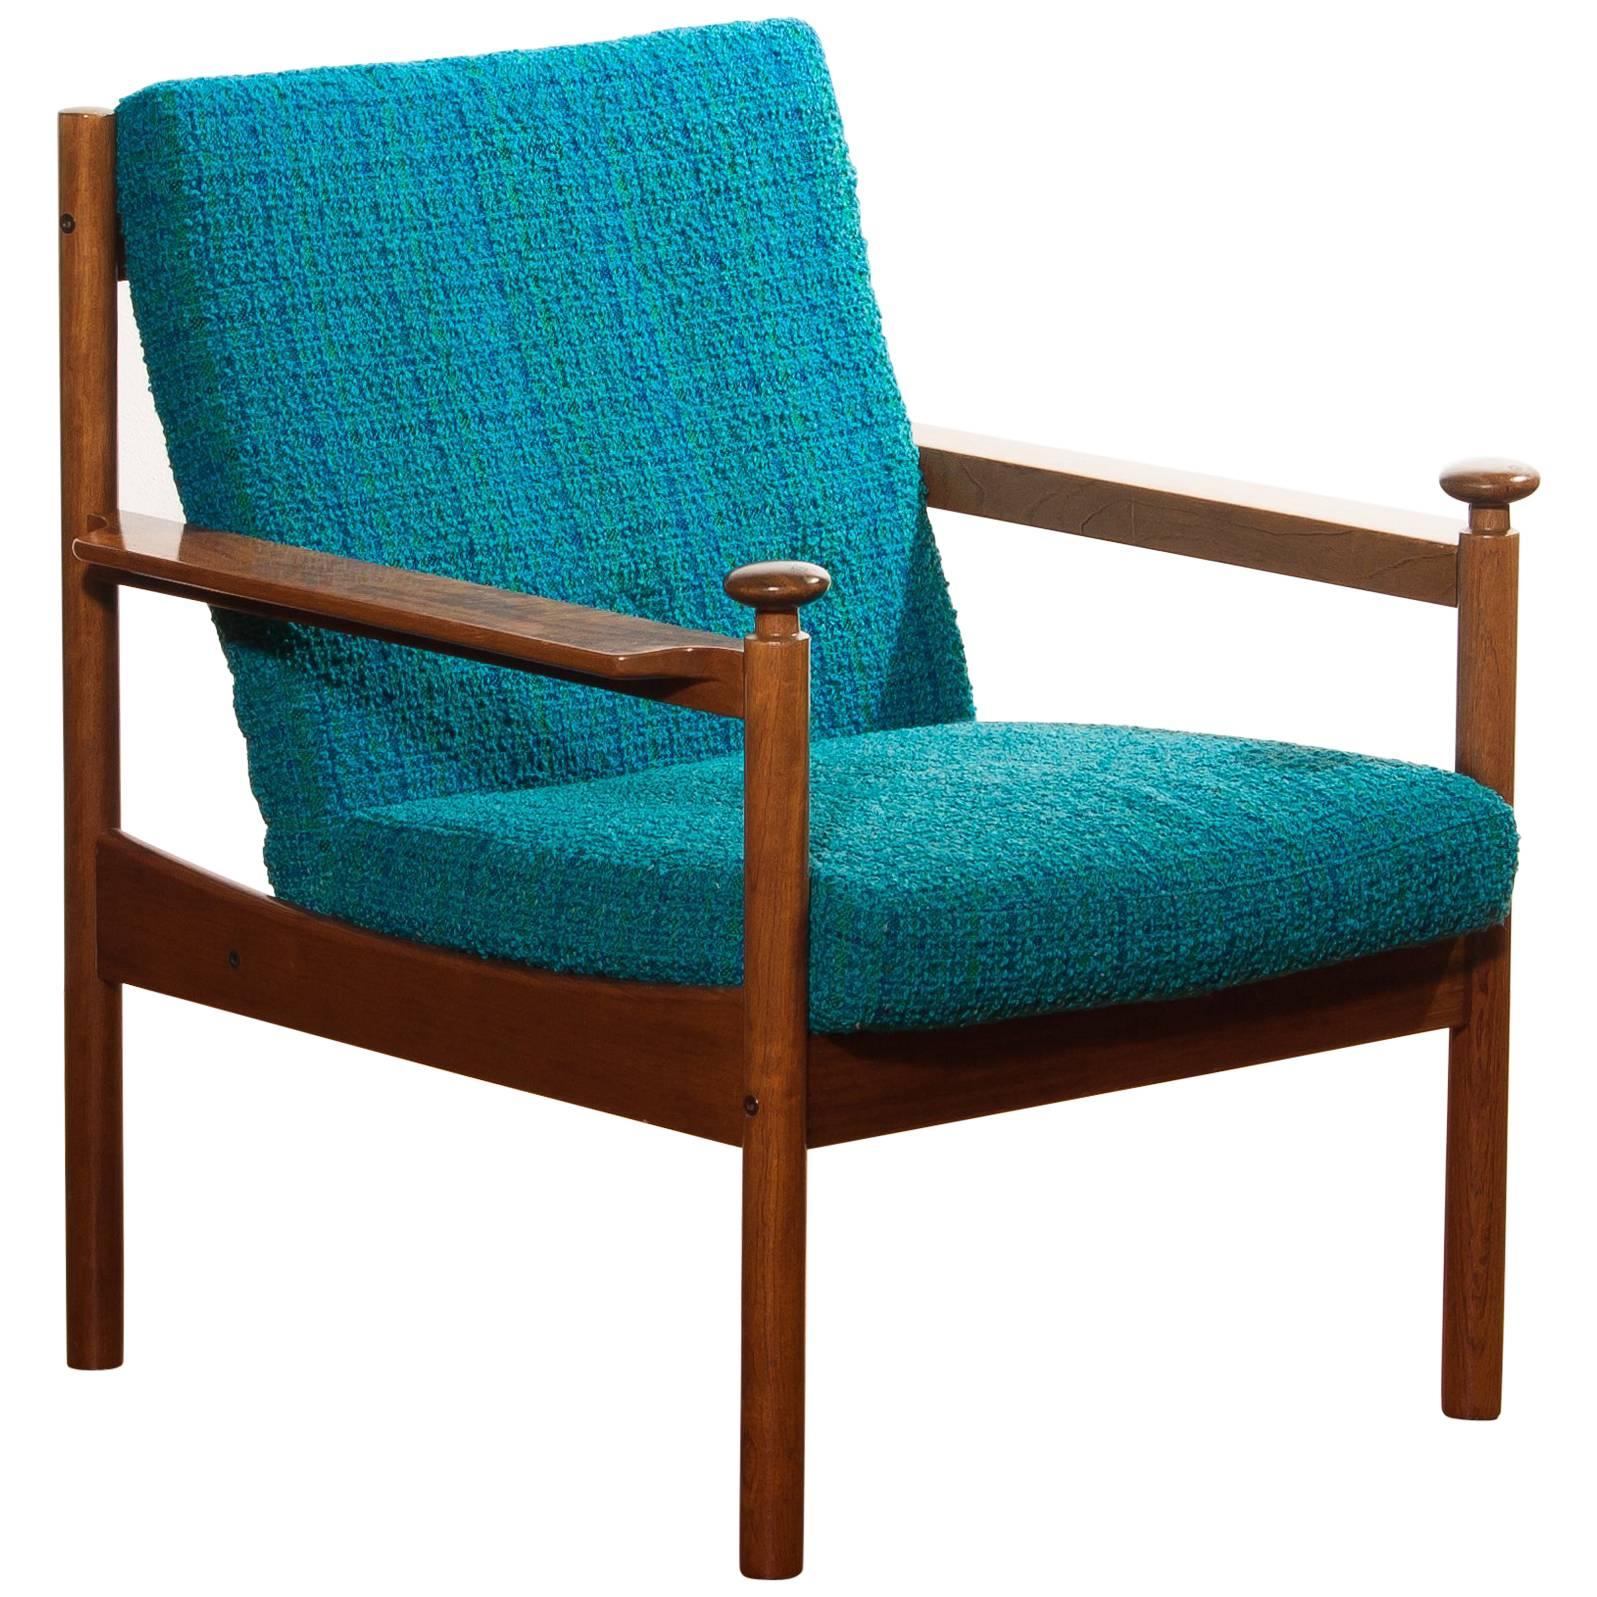 1950s, Chair by Torbjørn Afdal for Sandvik & Co Mobler